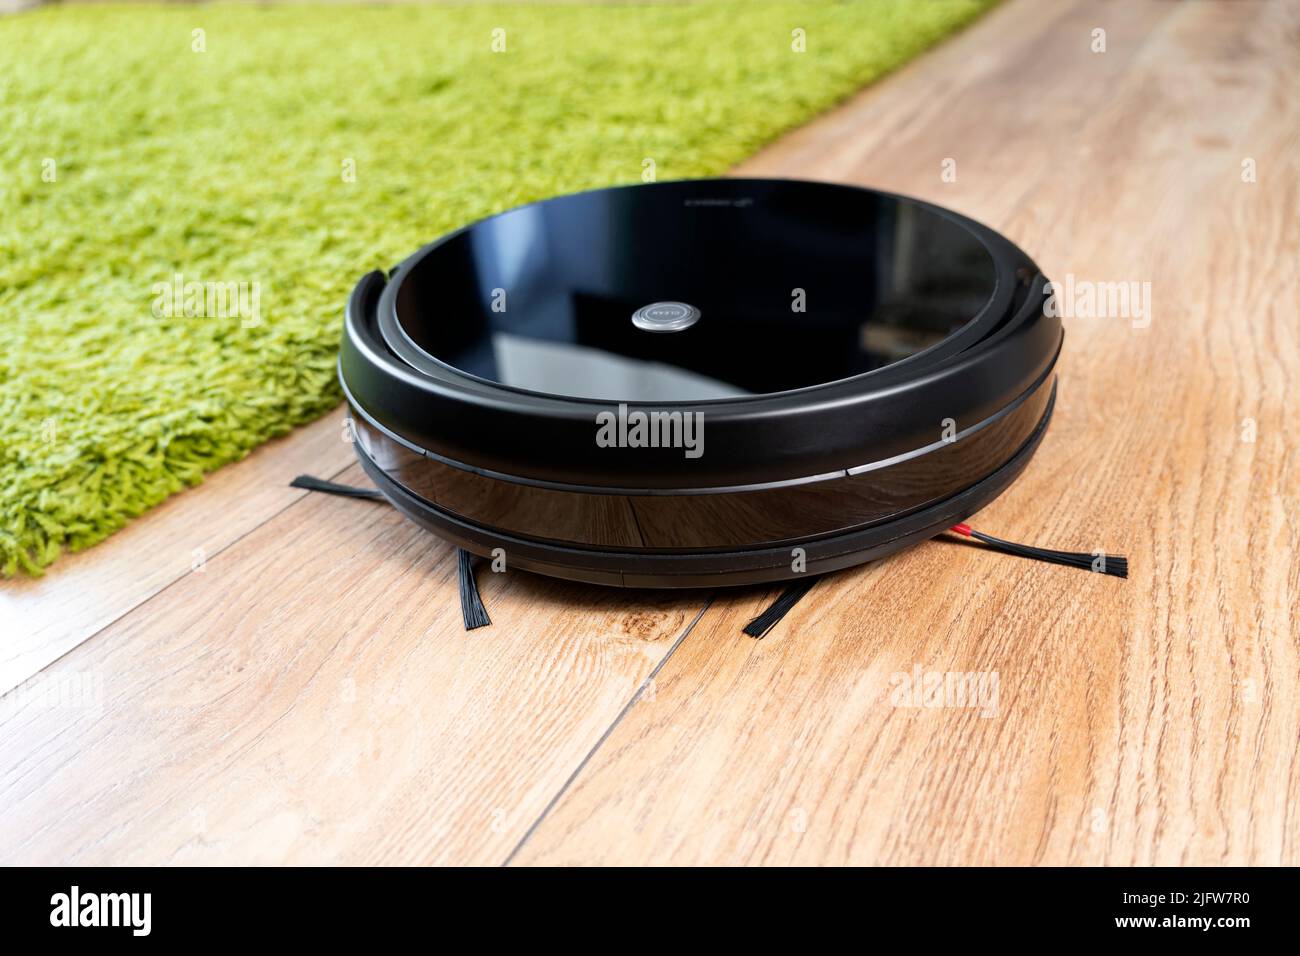 Automatischer Roboter-Staubsauger in Schwarz auf einem grünen Teppich. Neue  moderne Technologien für die Reinigung von Wohnungen. Smart Home  elektronischer Assistent Stockfotografie - Alamy